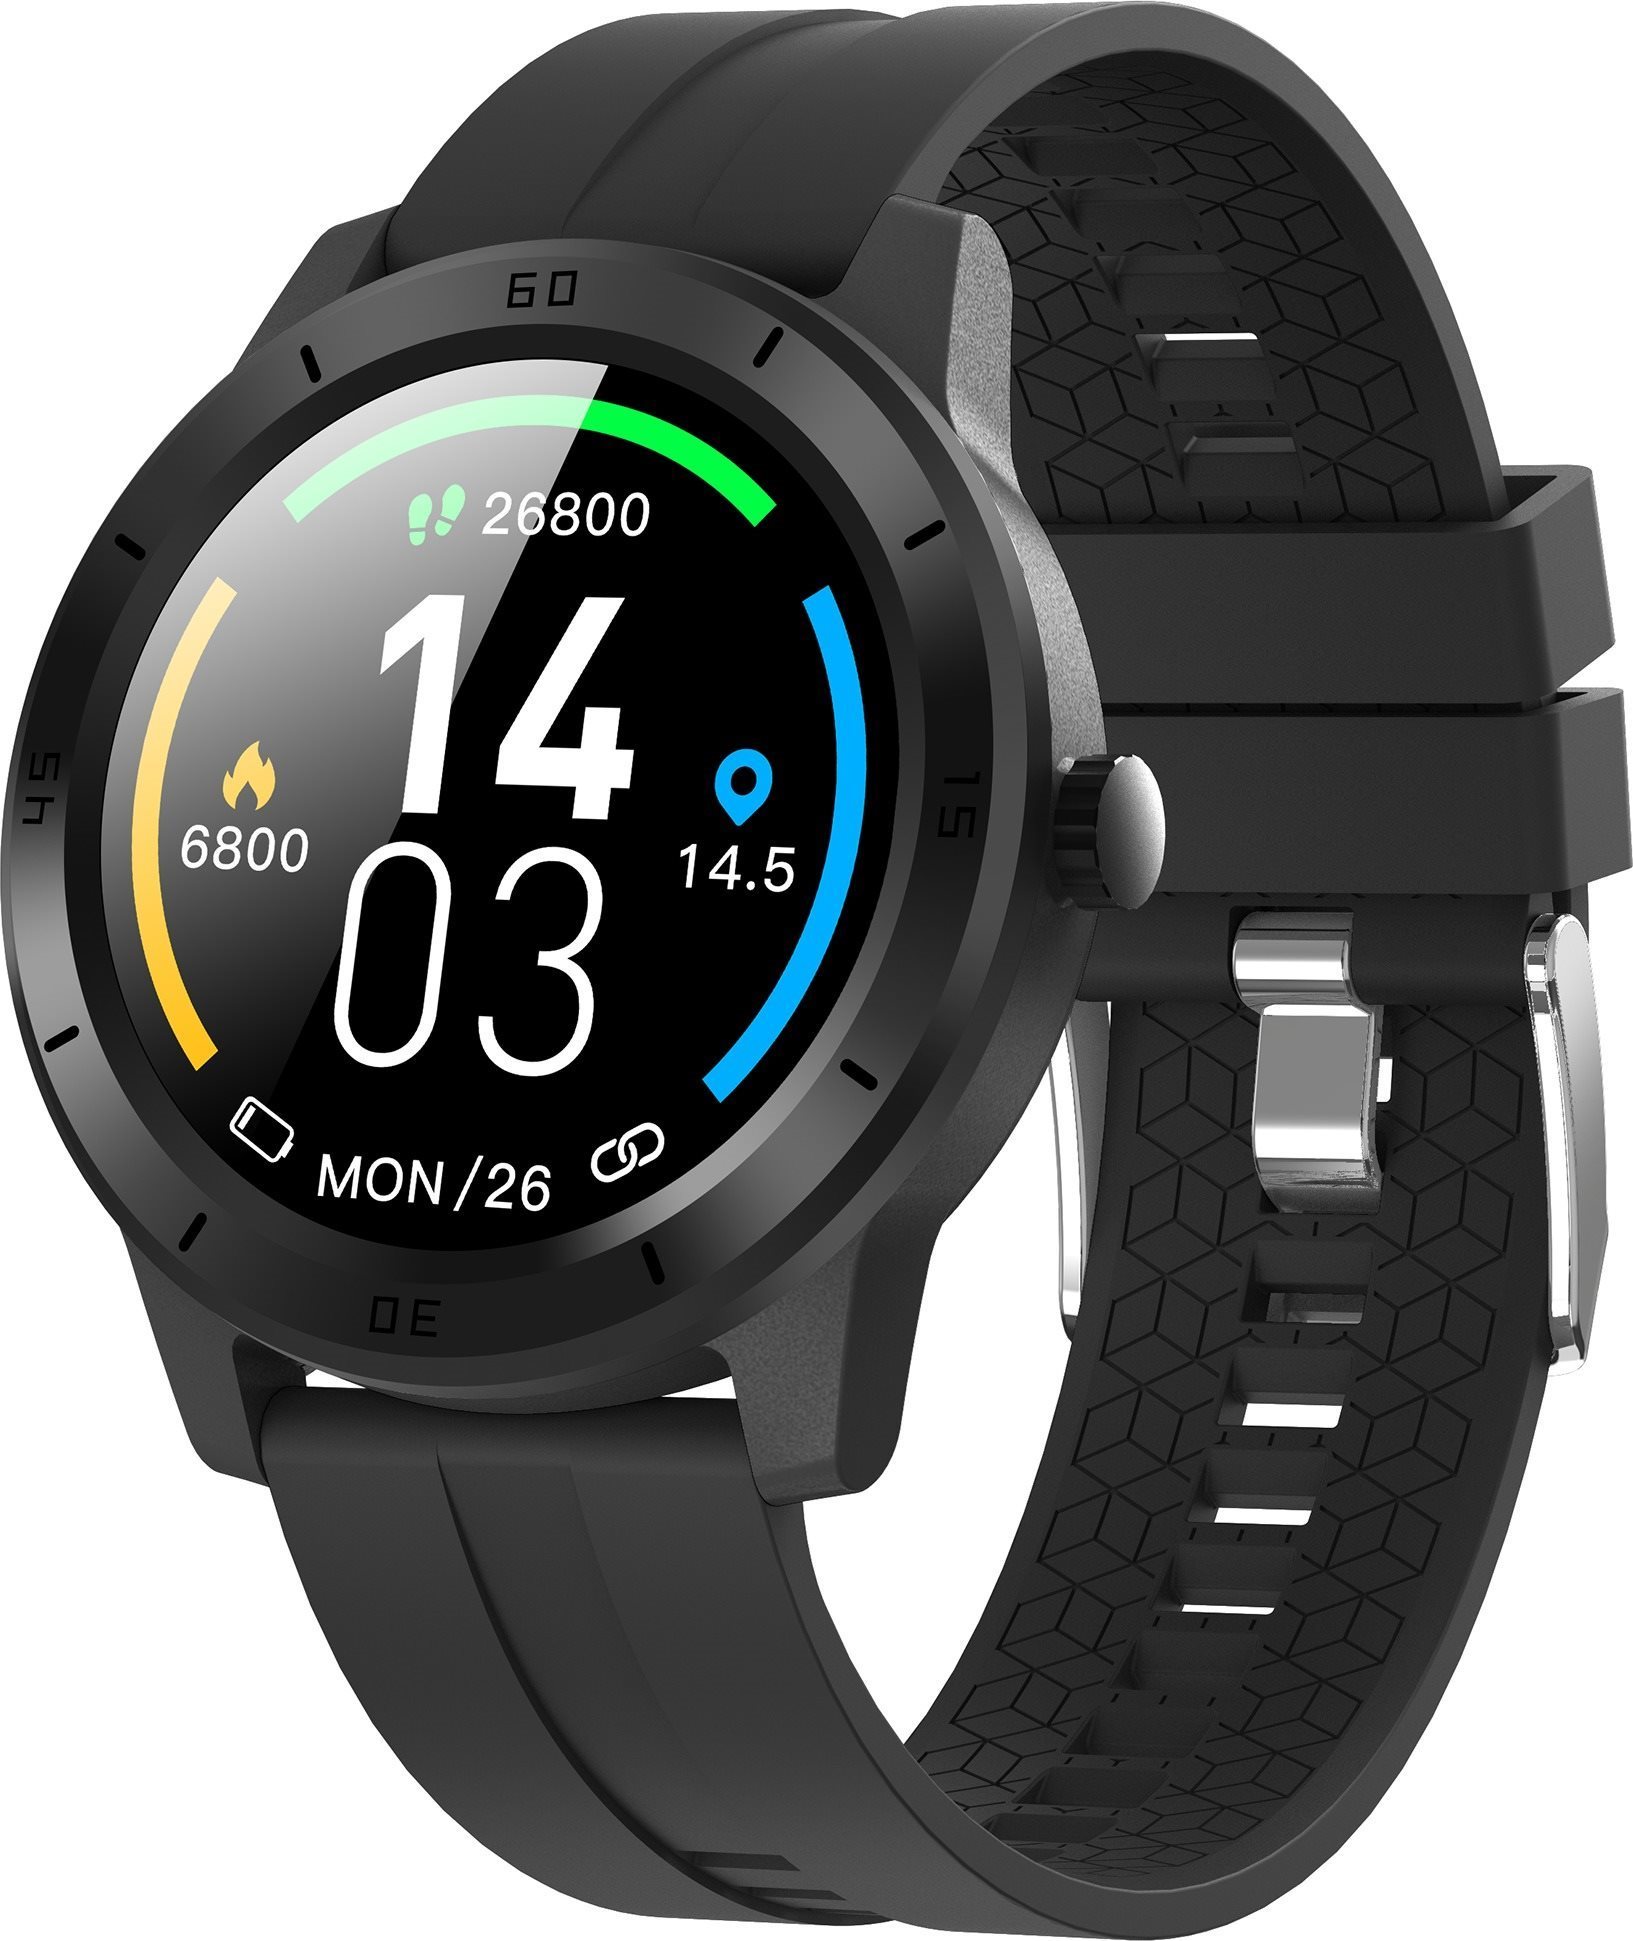 Okosóra Smart Watch DBT-GSW10 fekete